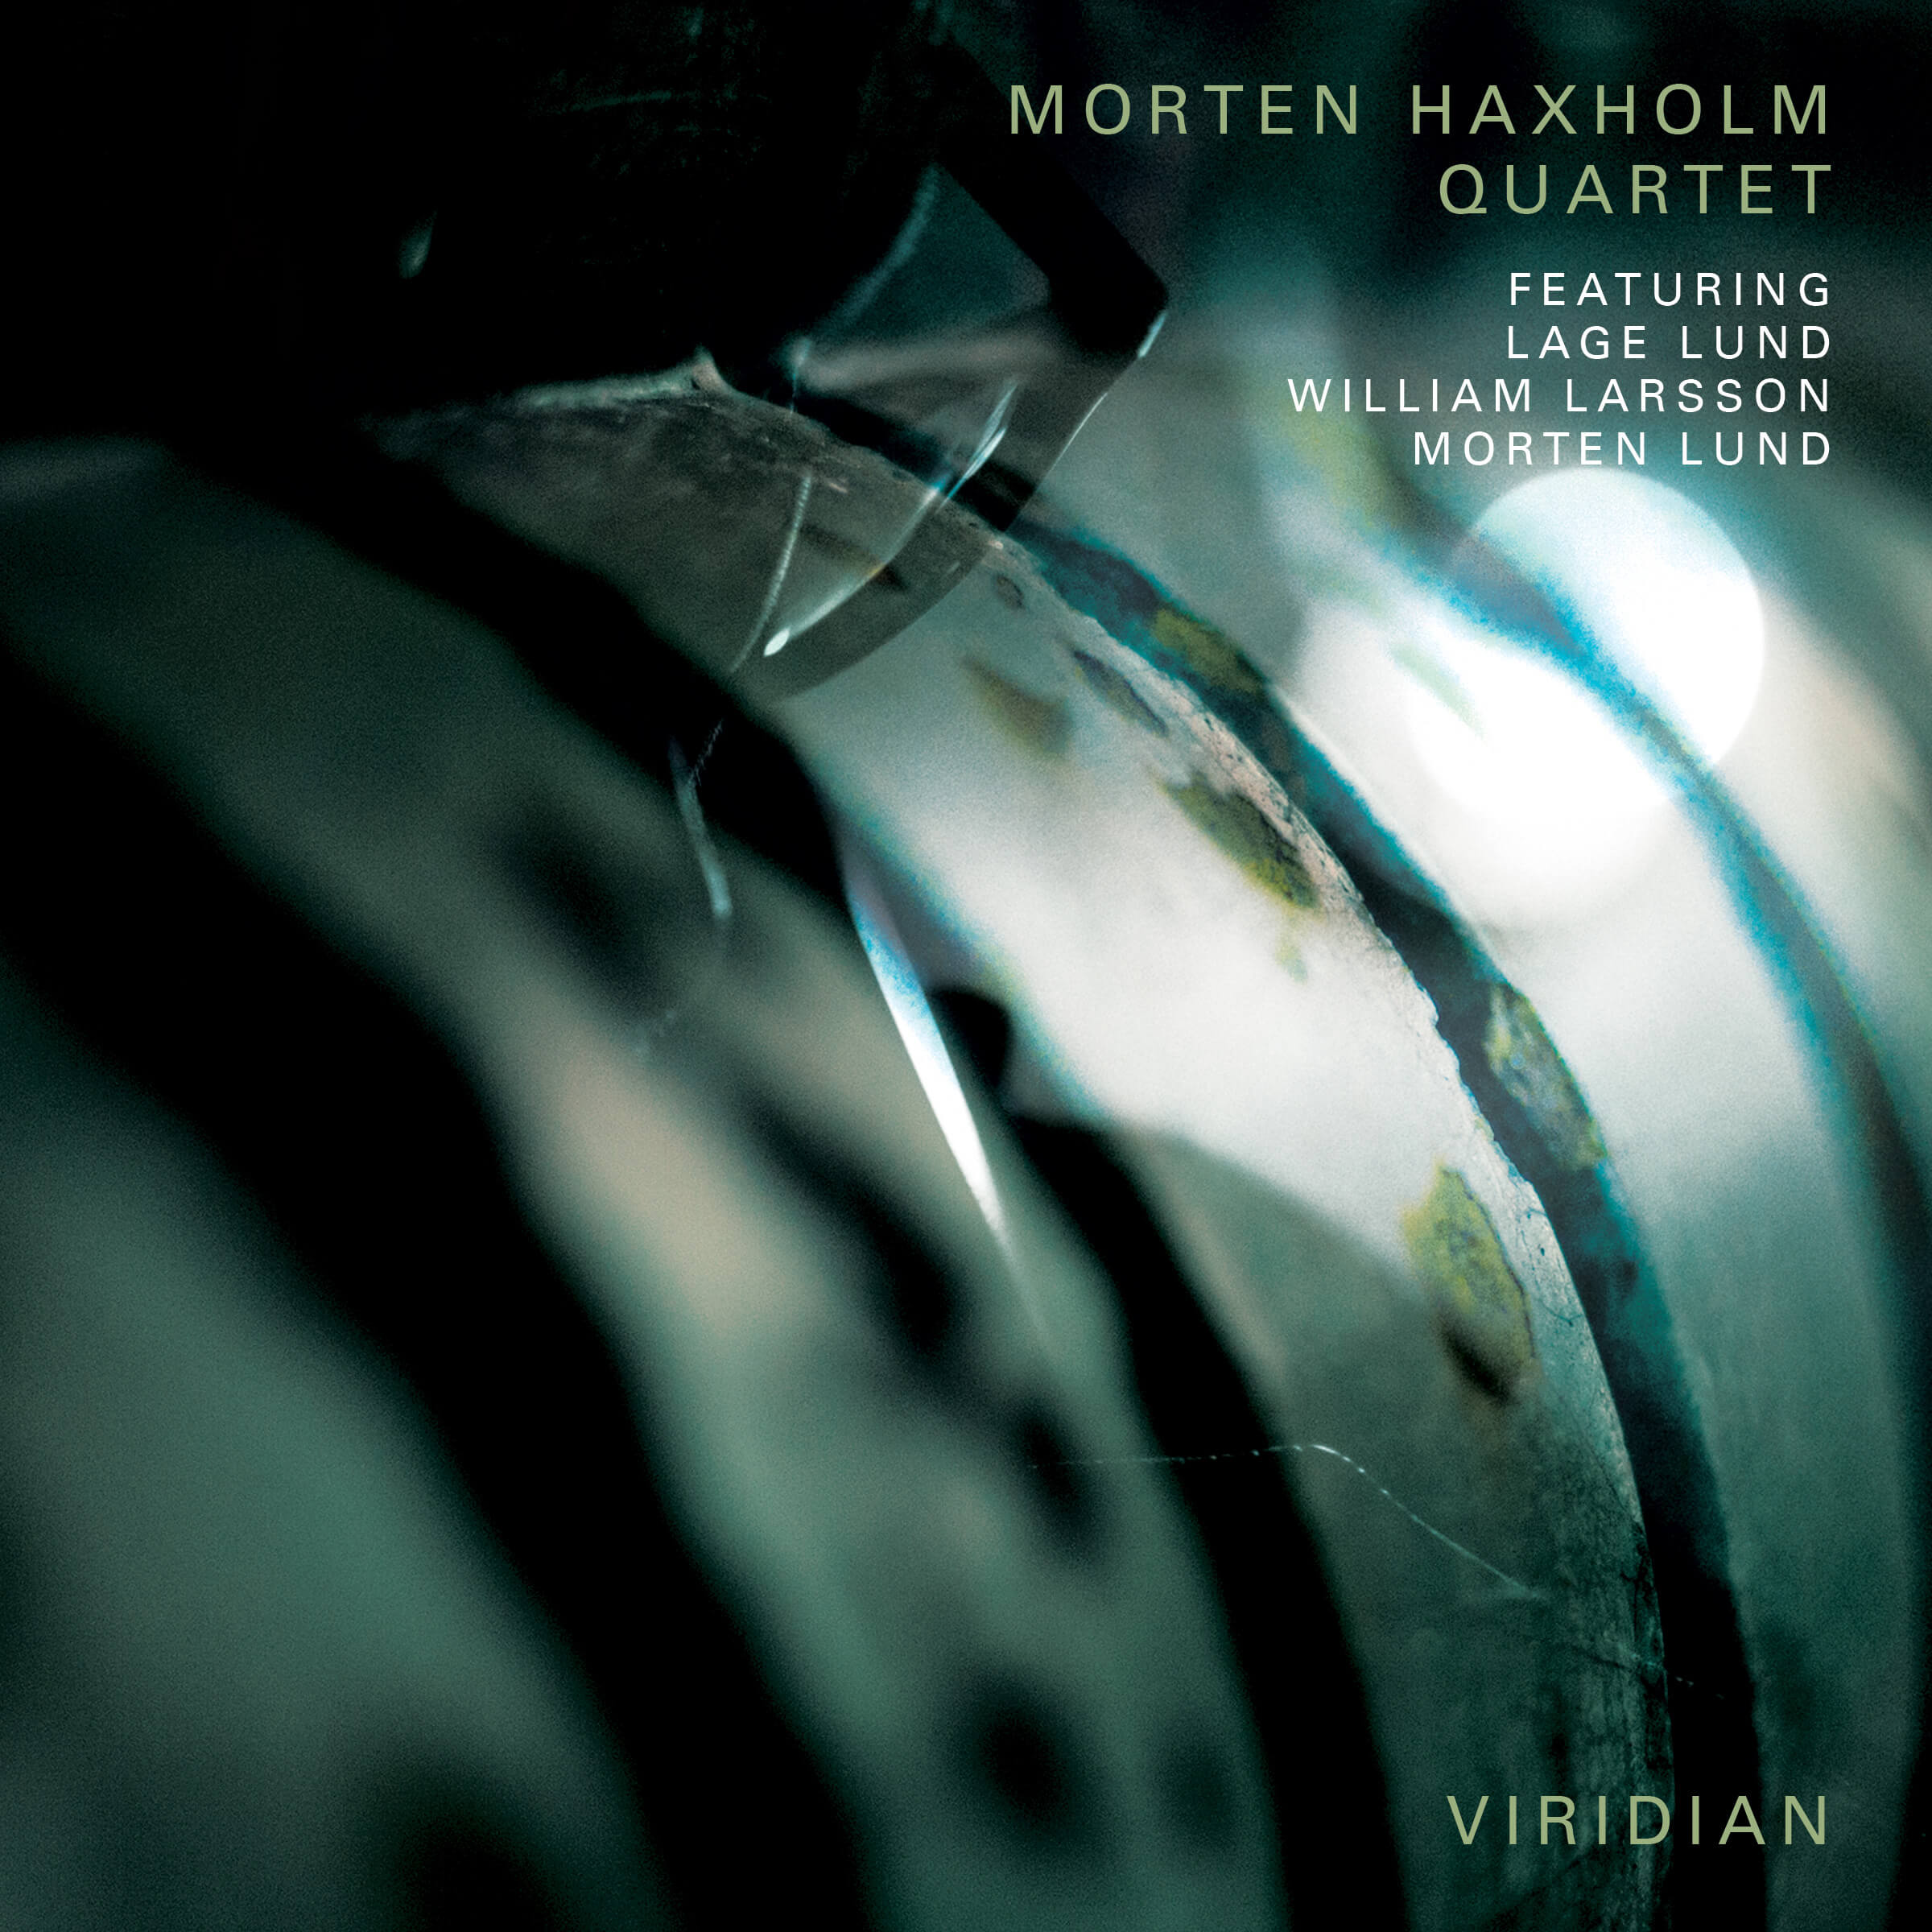 MORTEN HAXHOLM - Morten Haxholm Quartet : Viridian cover 